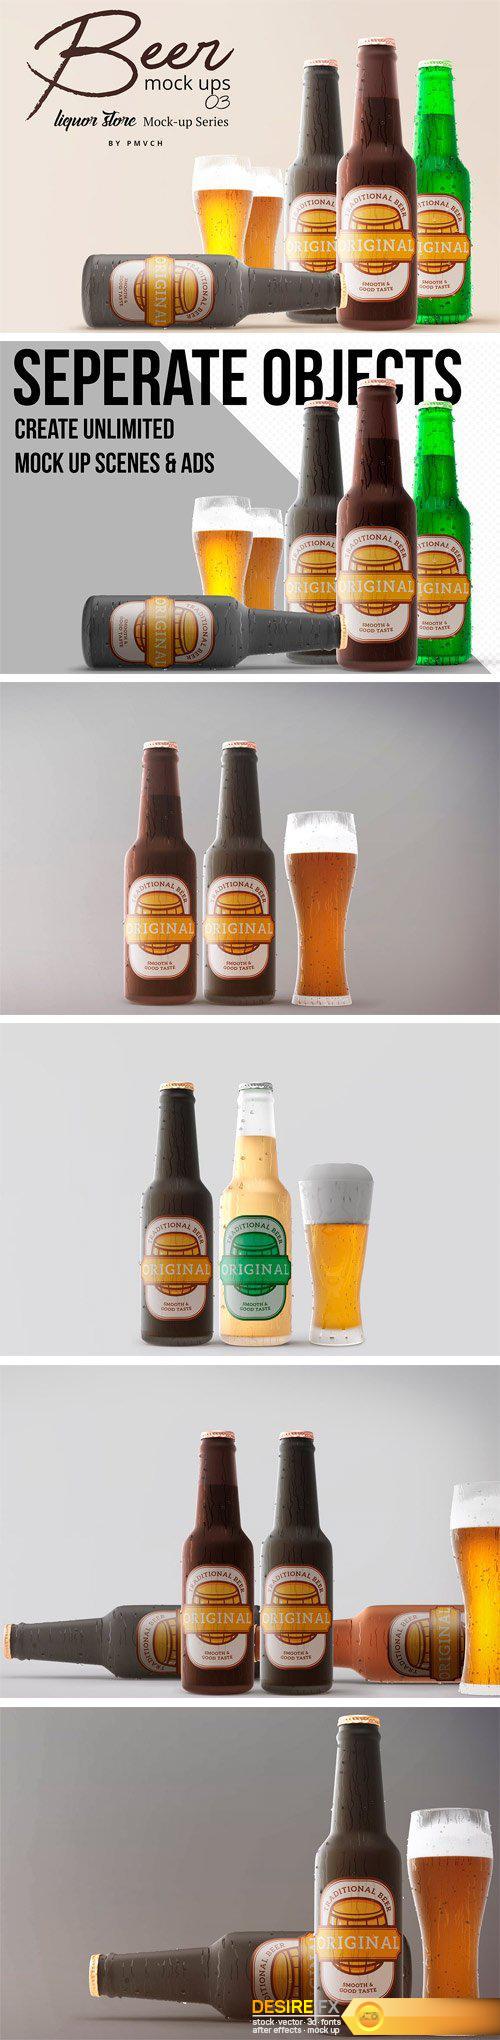 CM - Beer Mockups 03 - Cold Beer 2391551